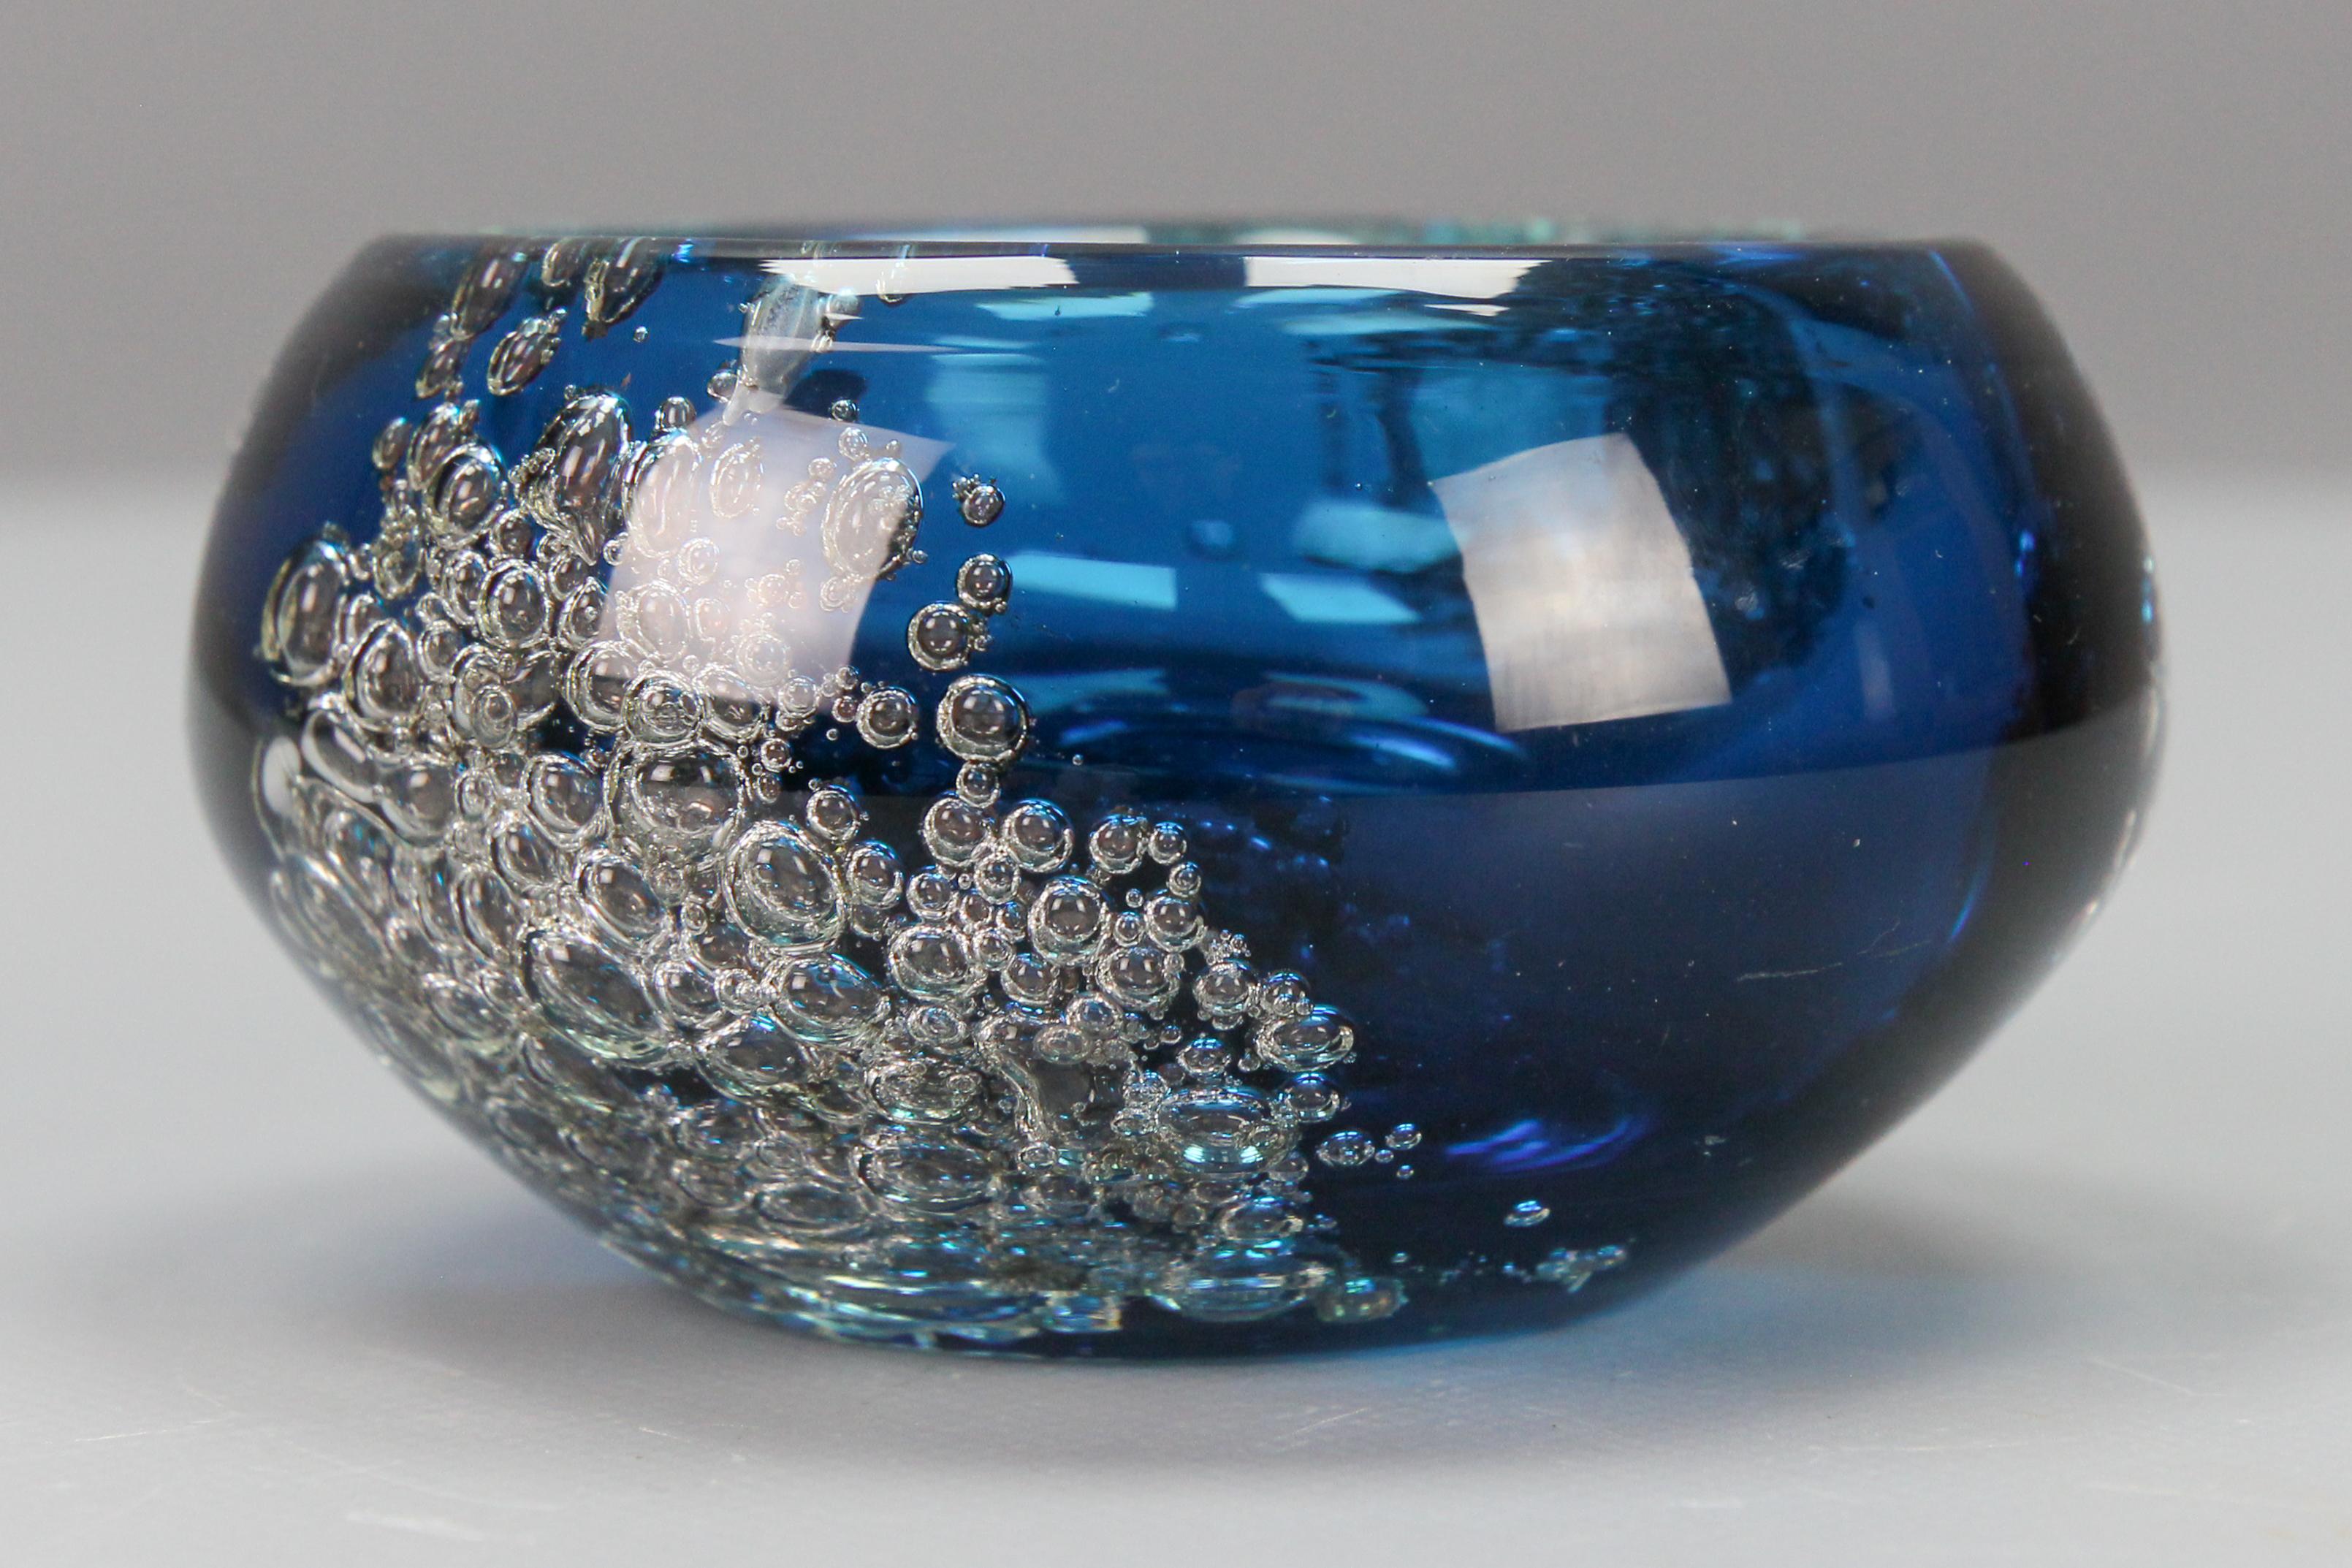 Kleine blaue Glasschale von Zwiesel, Deutschland, 1970er Jahre.
Eine bezaubernde und dekorative blaue Glasschale mit einem schönen Einschluss von Luftblasen. 
In gutem Zustand mit leichten Alterungserscheinungen.
Abmessungen: Höhe: 6 cm;